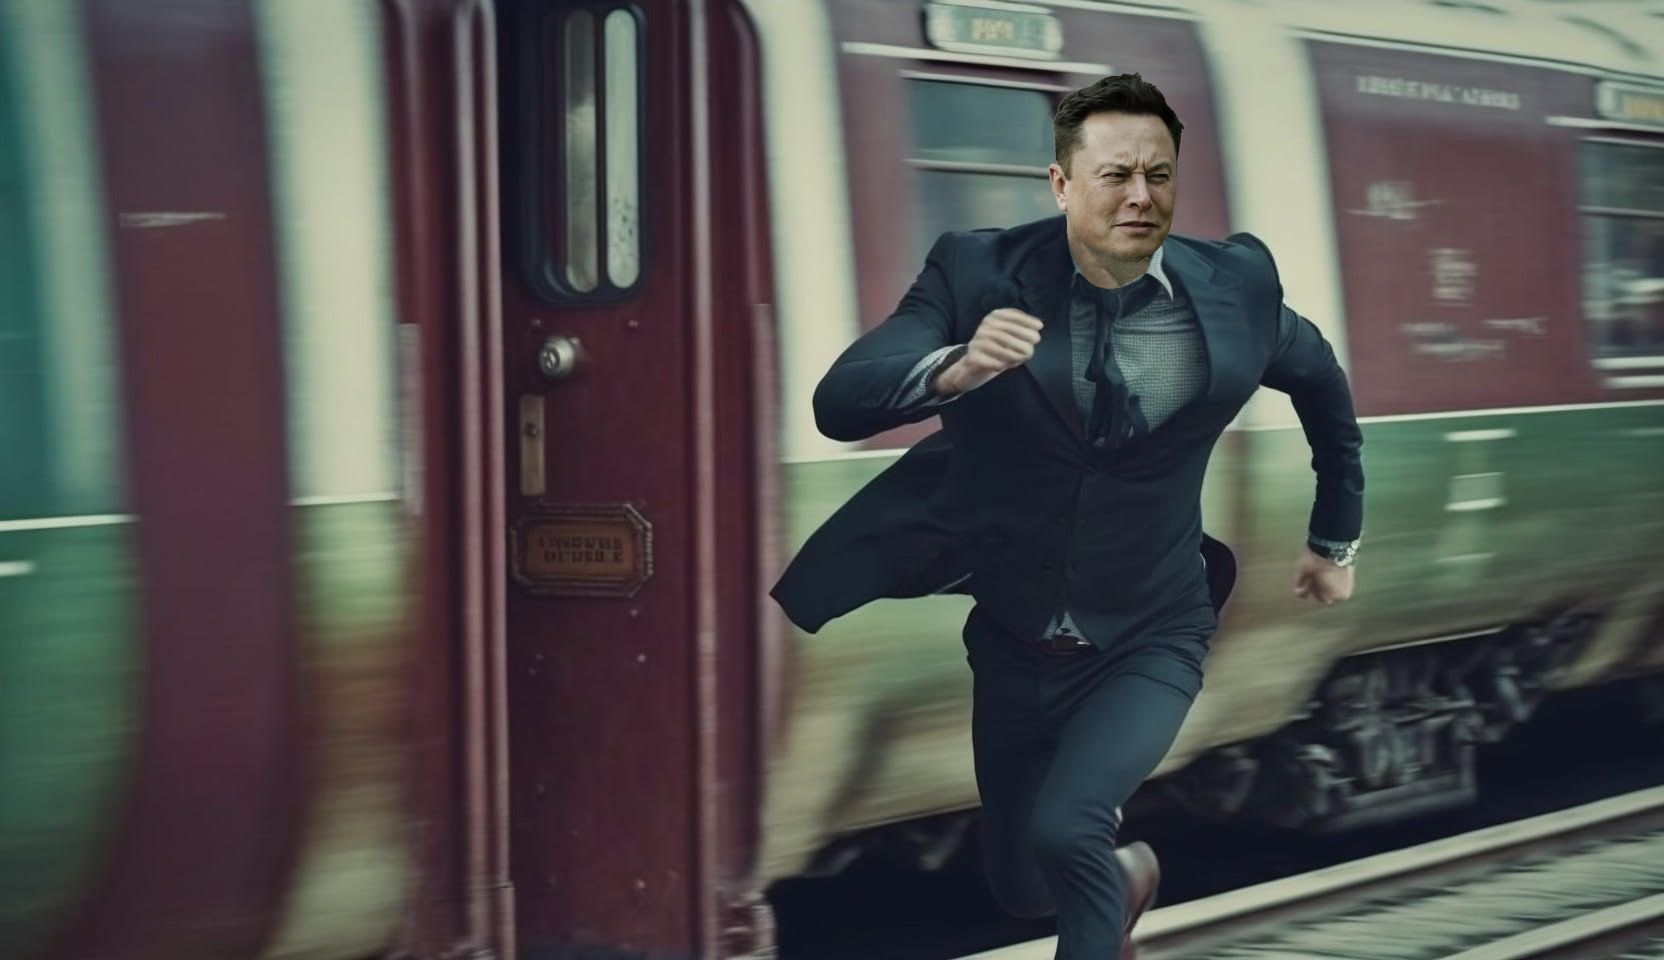 Elon run after the AI train.